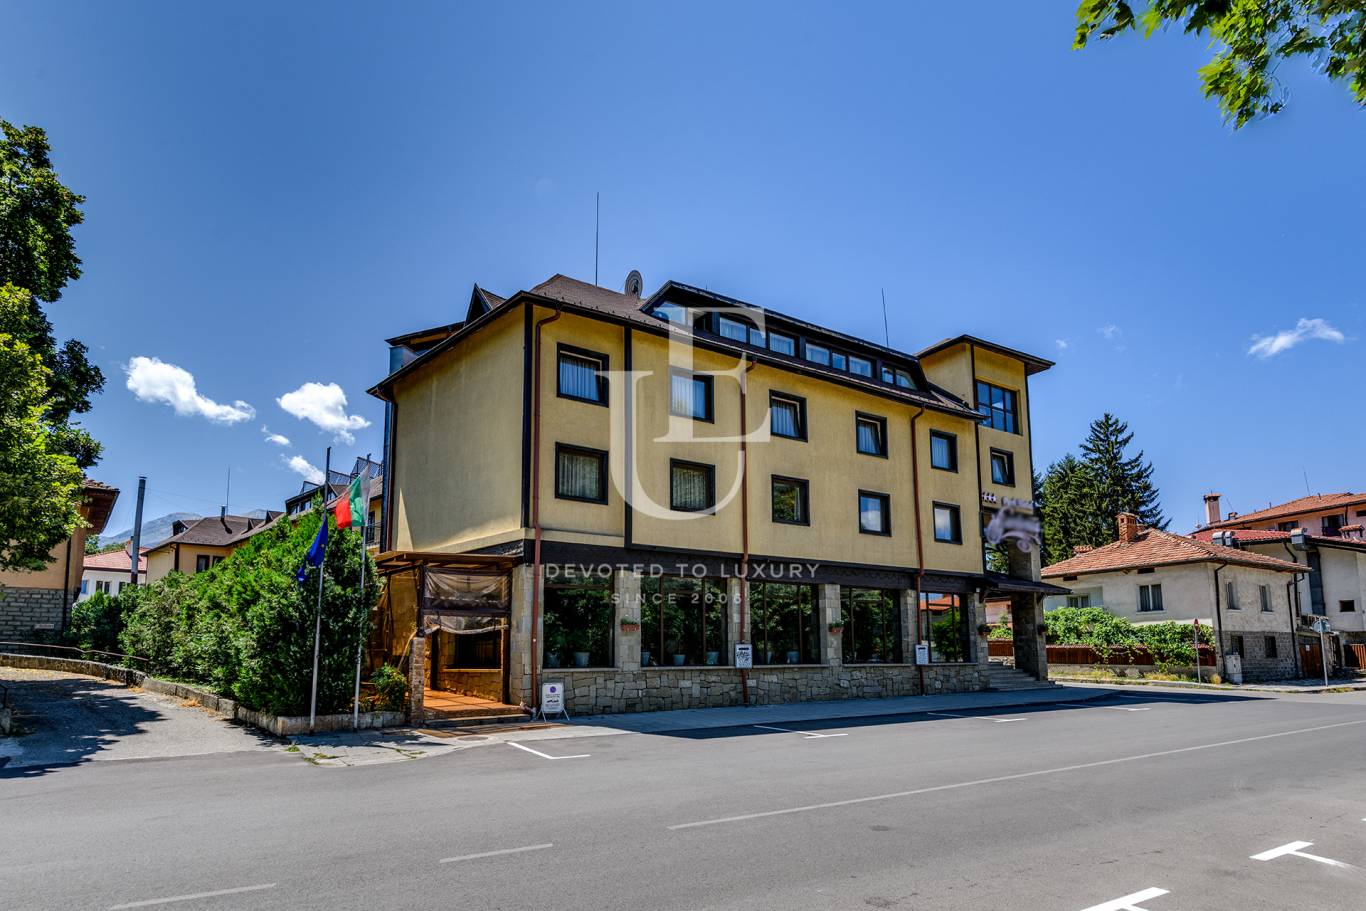 Хотел / Apartment house за продажба в Банско,  - код на имота: E20655 - image 1